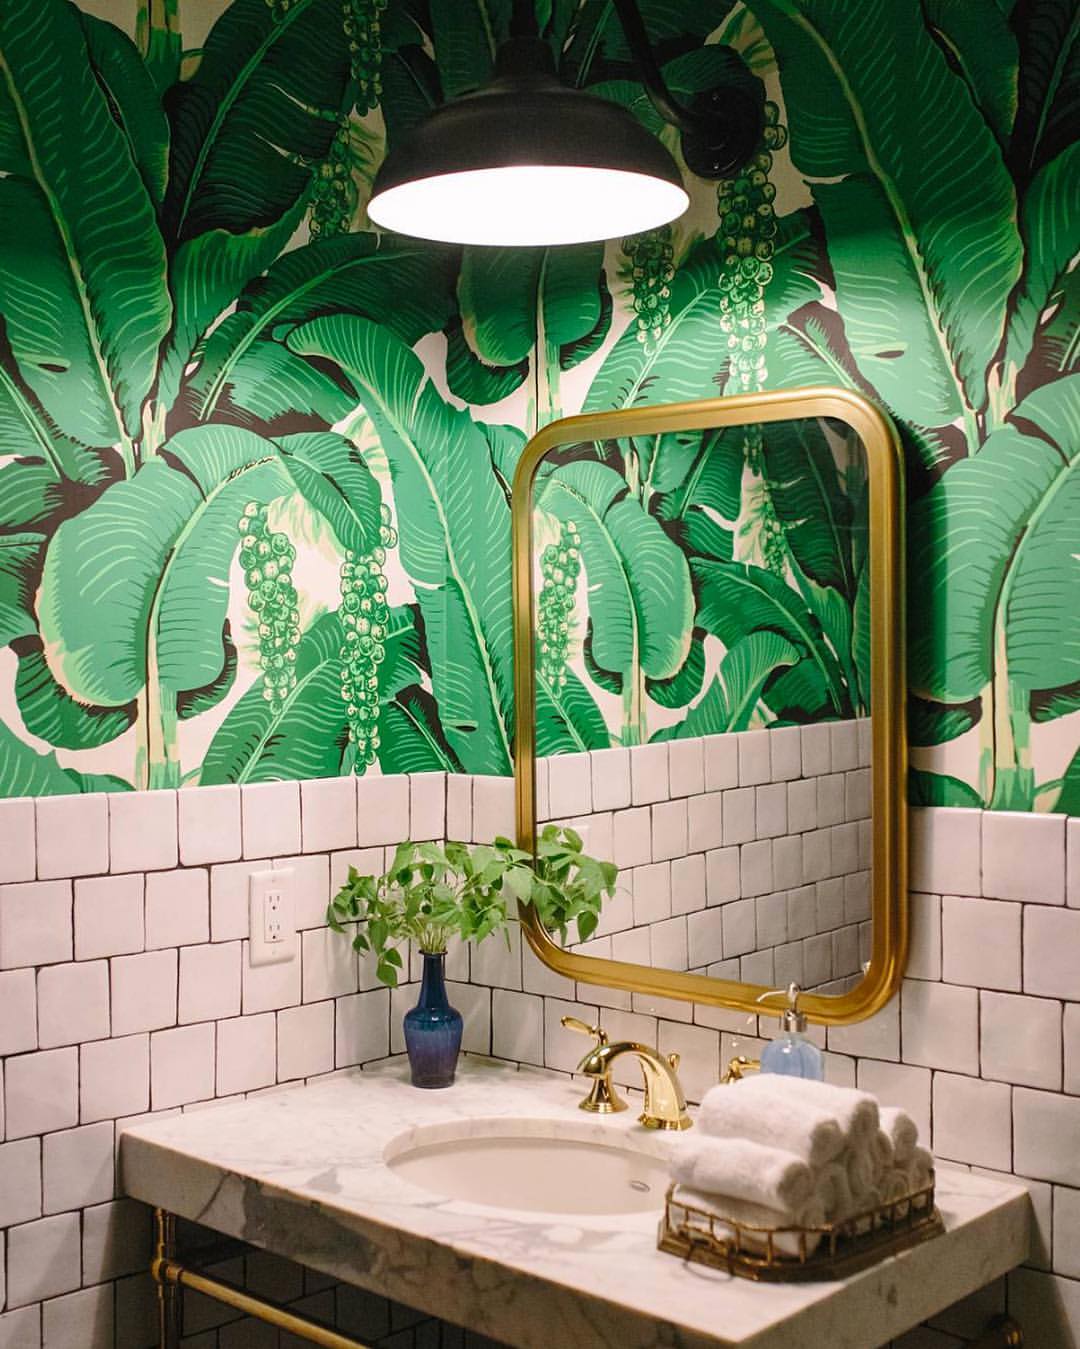 Ha pedig végképp nincs más megoldás, egy jópofa dzsungel-tapétával is feldobhatjuk a fürdőszobát! :)